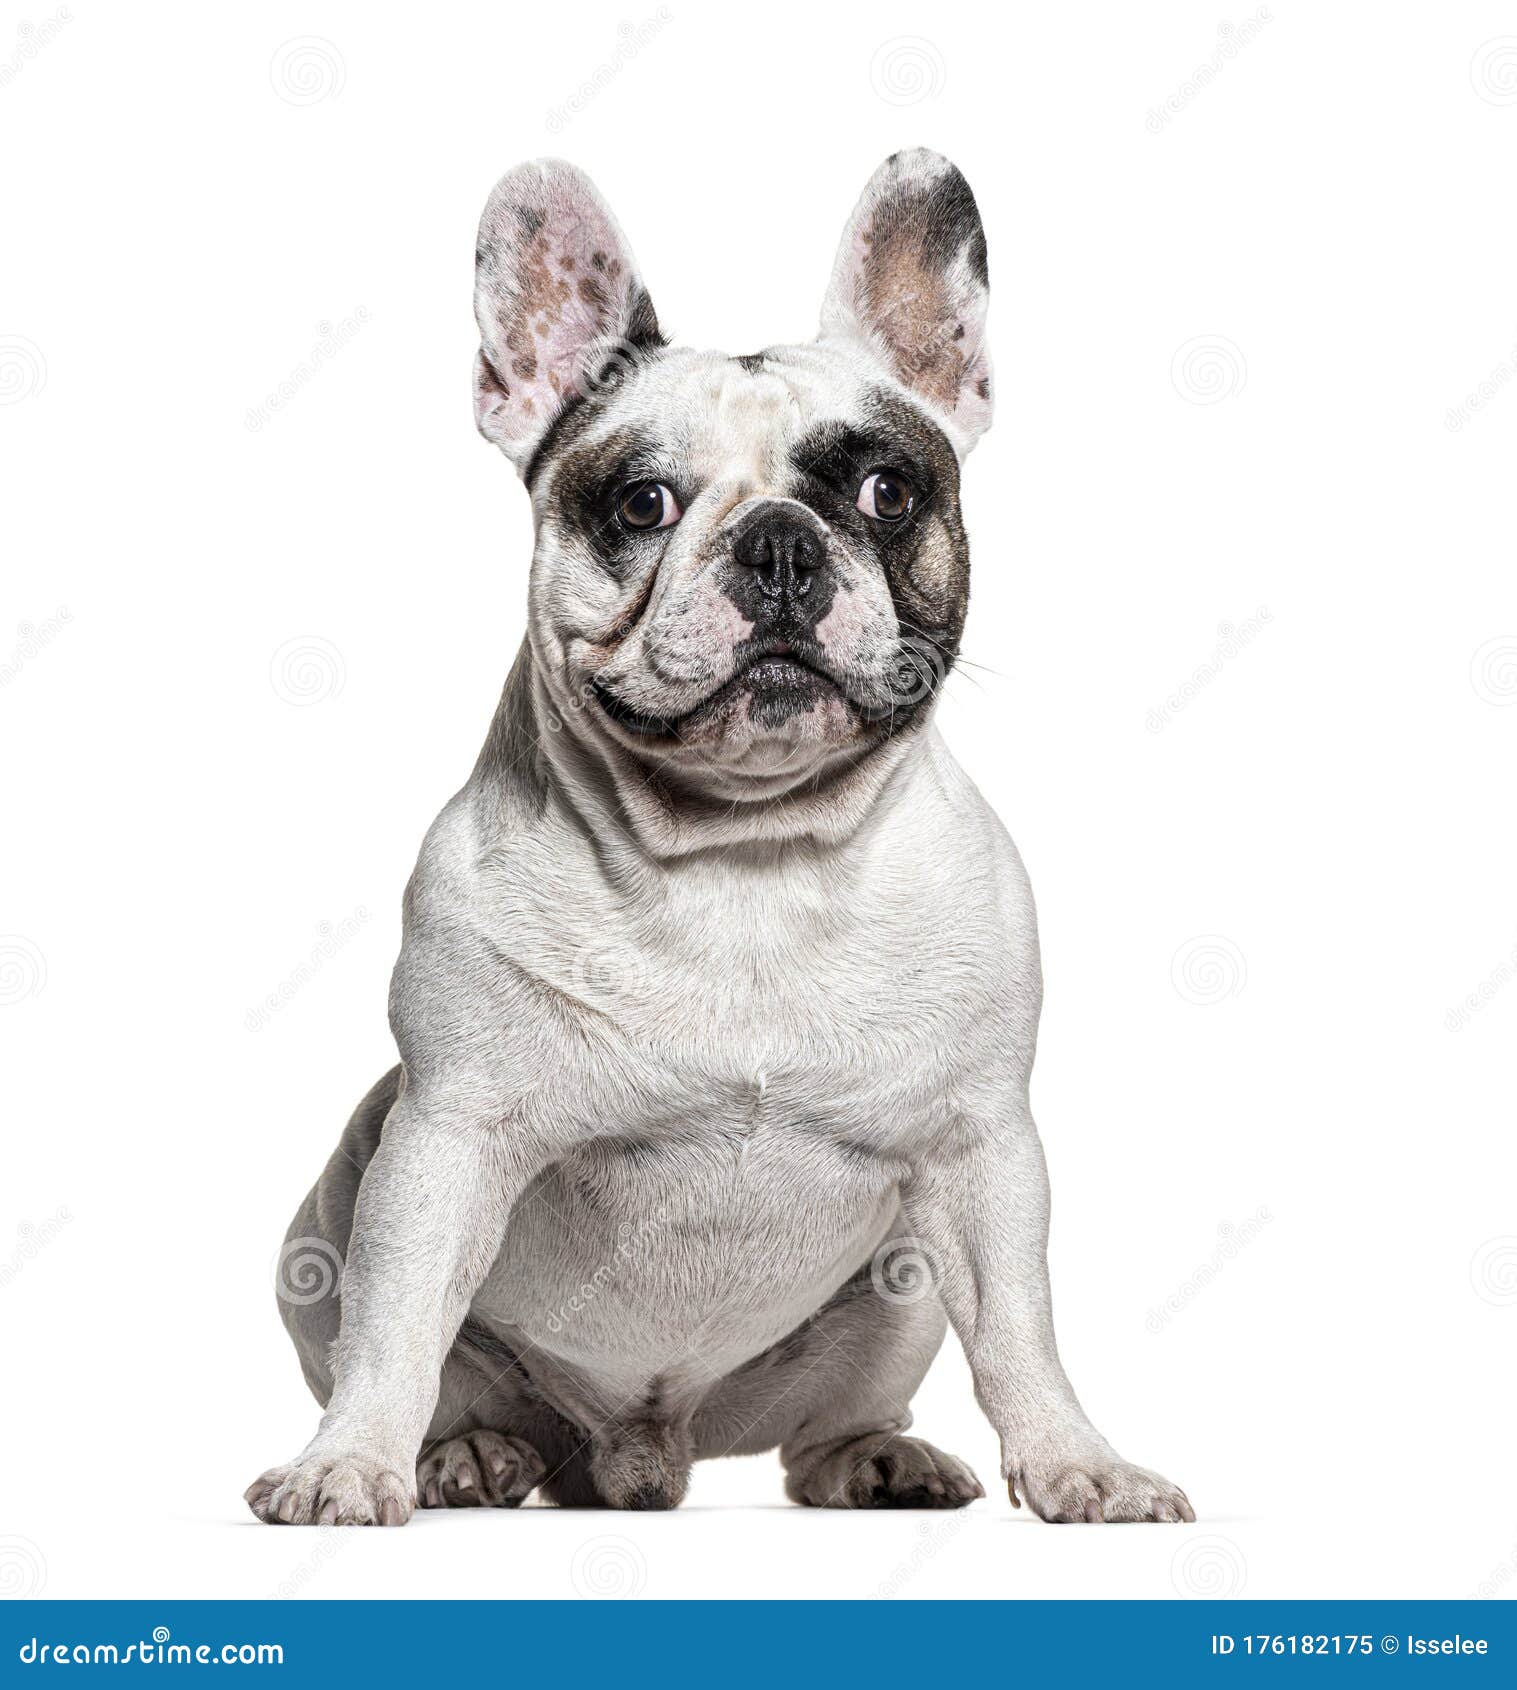 Sitting French bulldog stock image. Image of people - 176182175